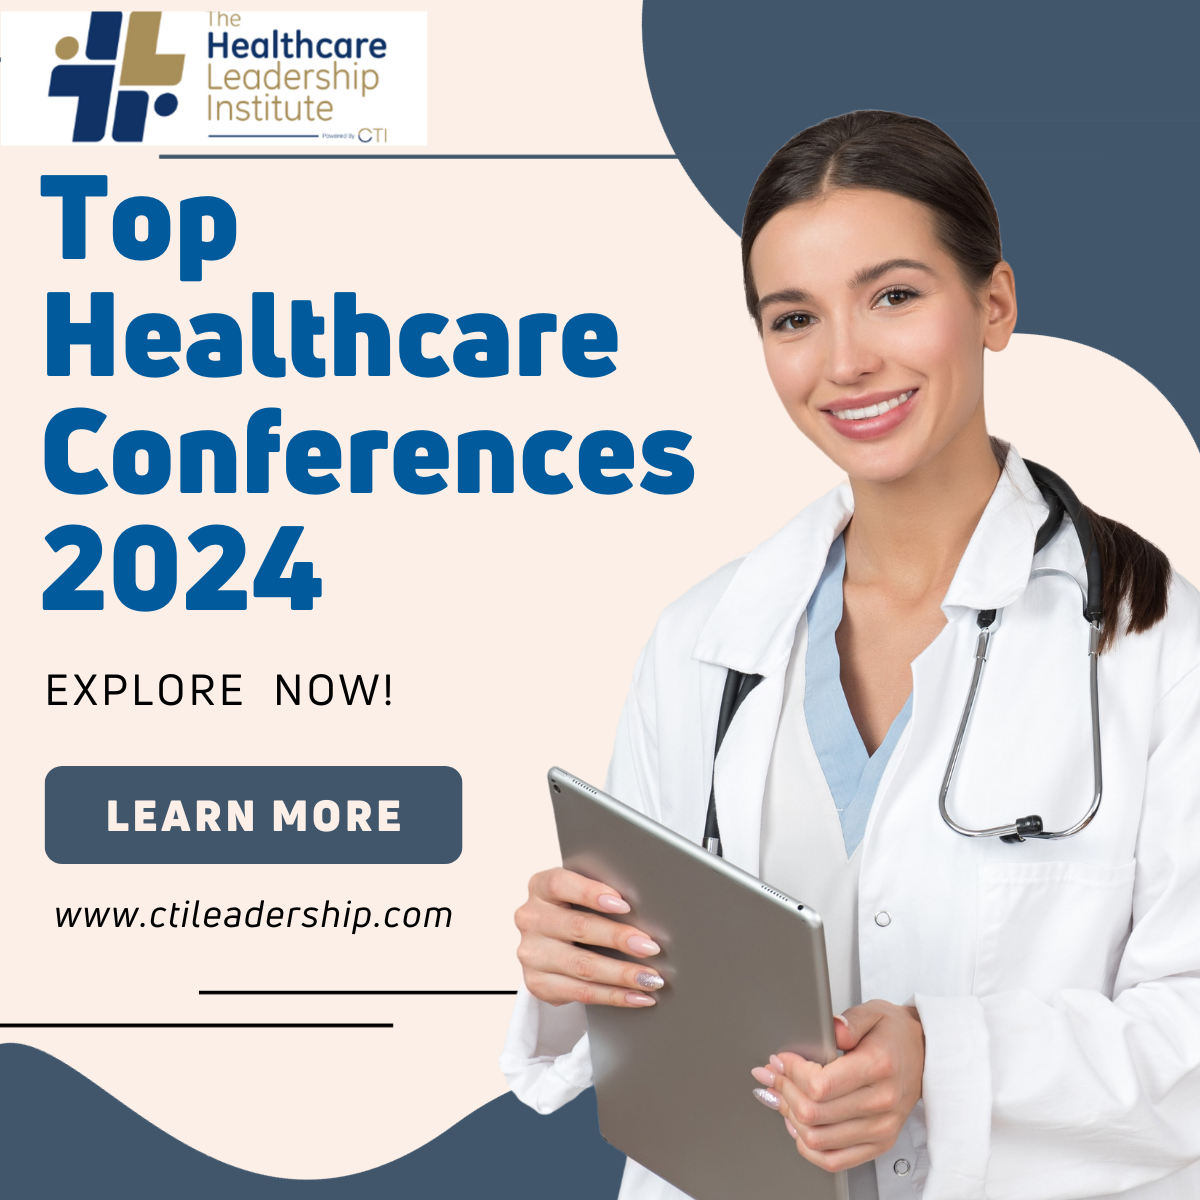 Top Healthcare Conferences